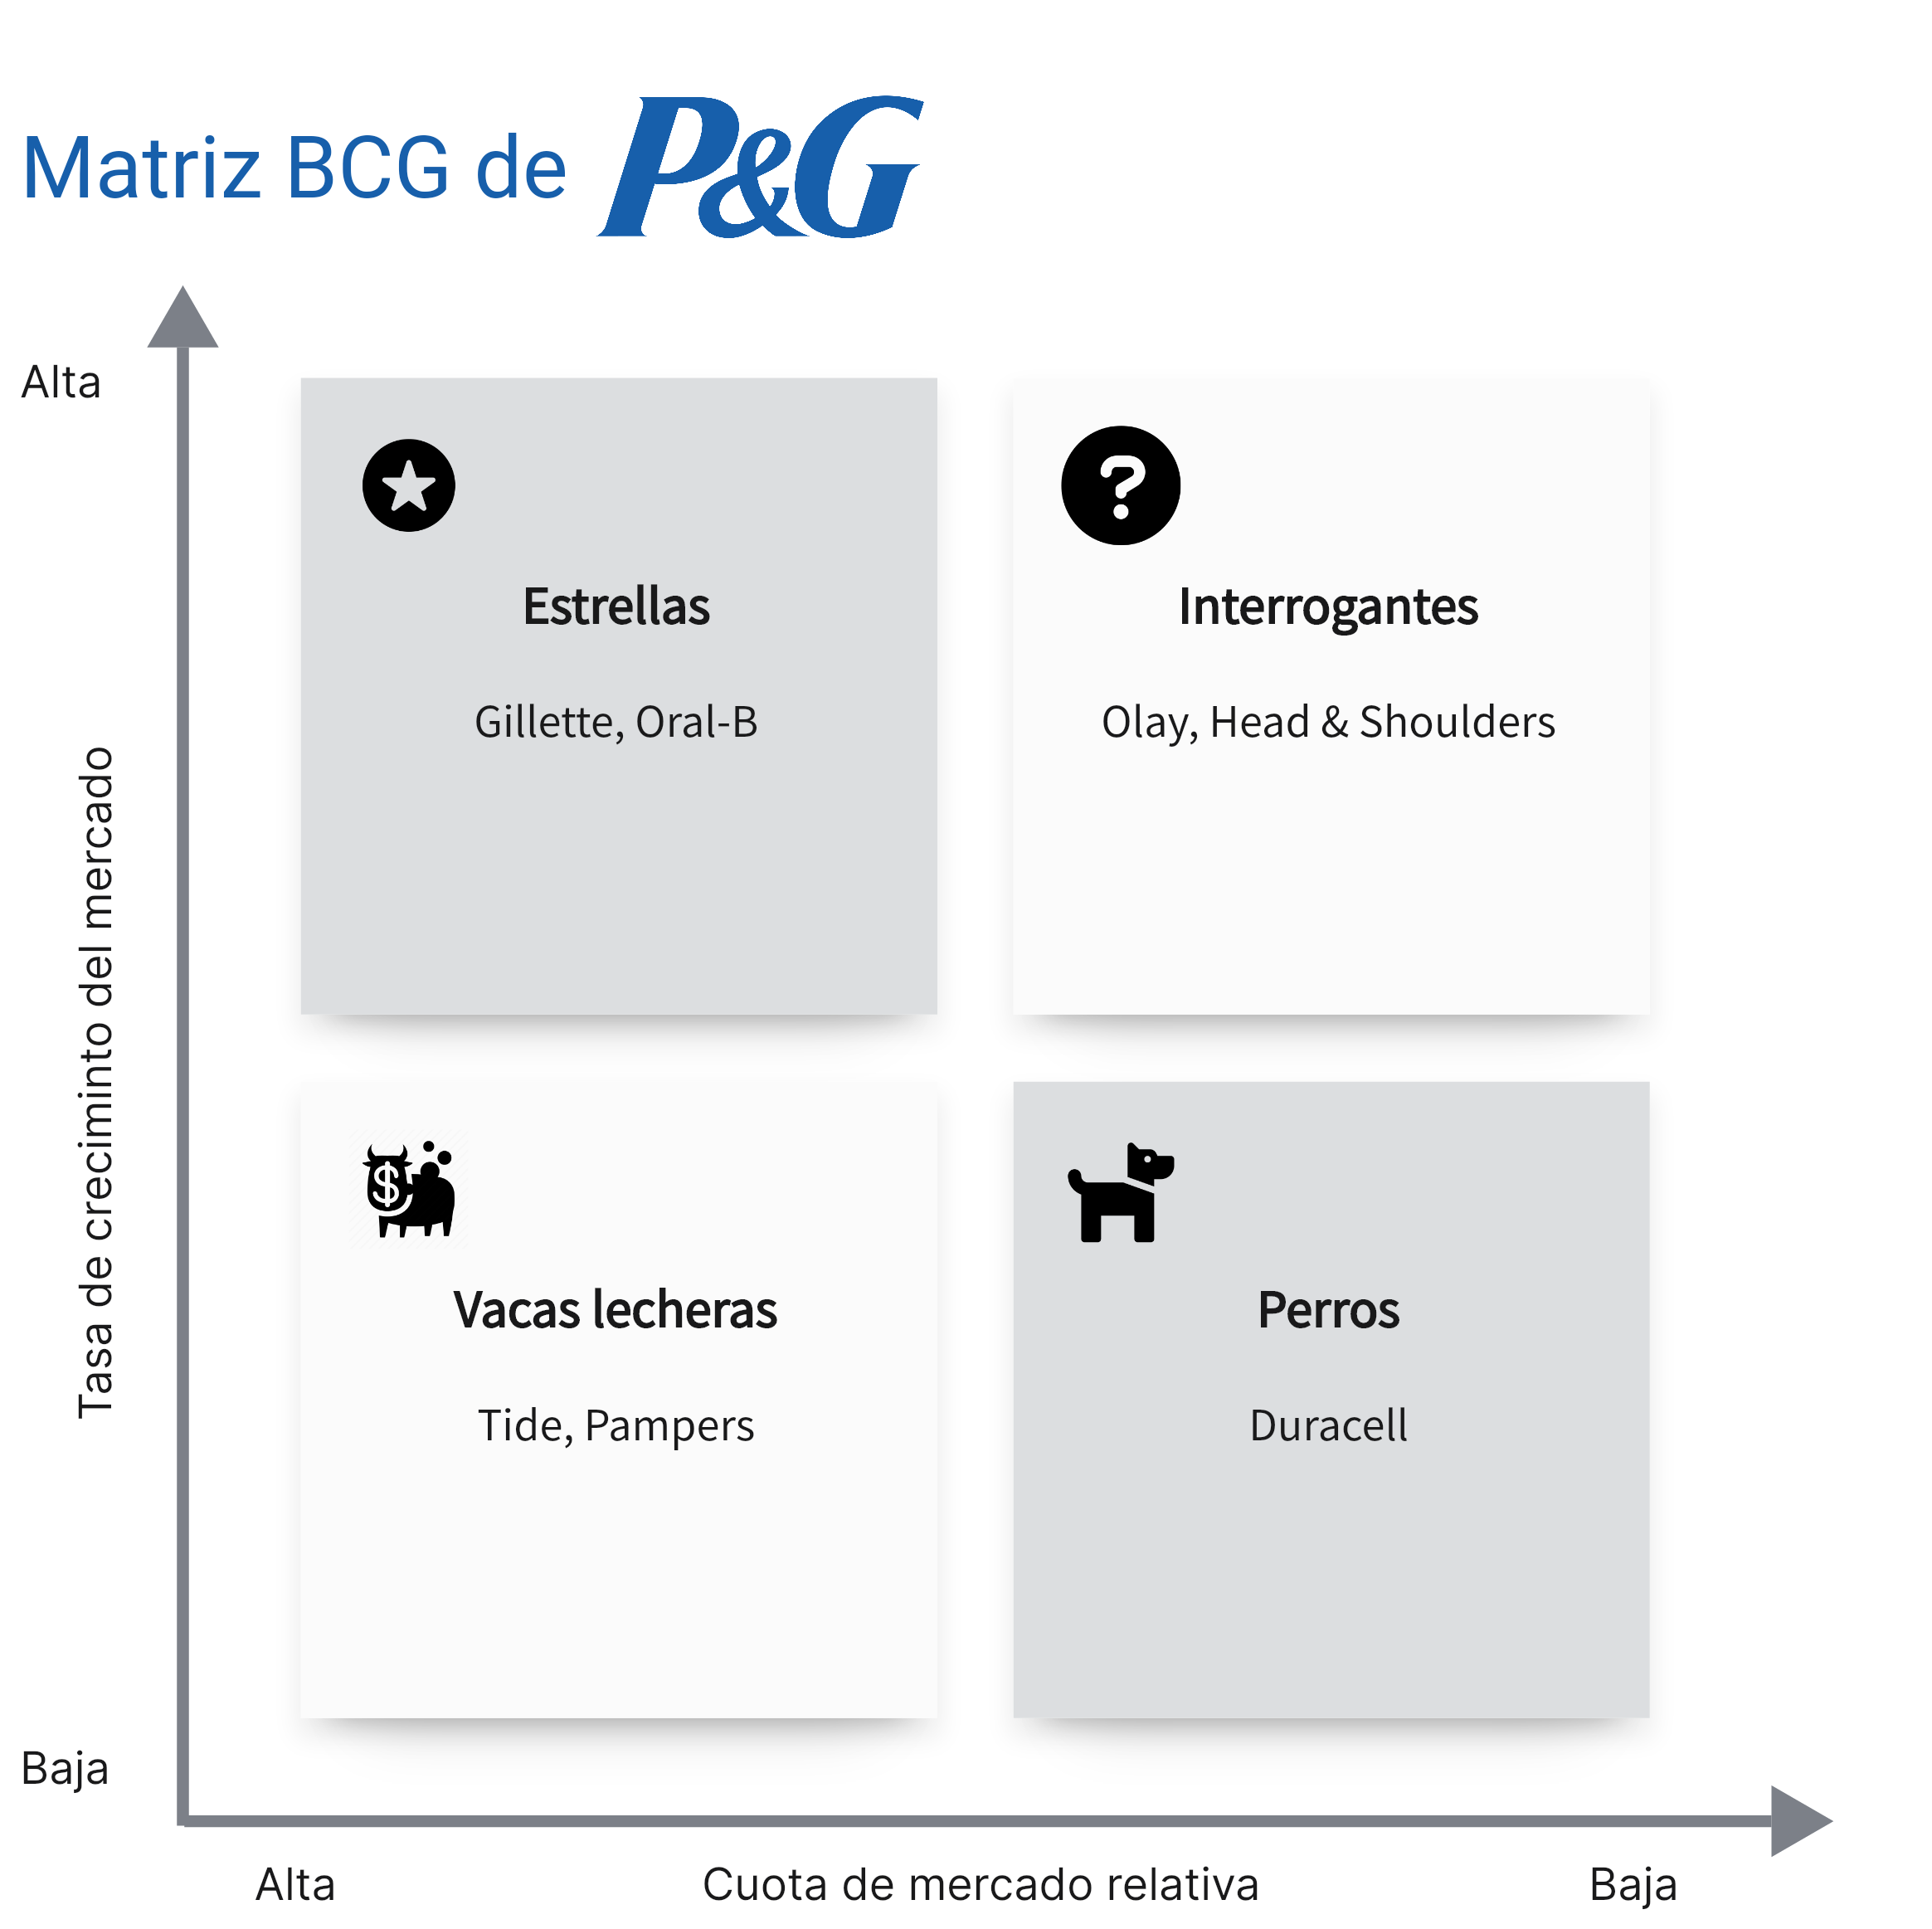 Matriz BCG de Procter & Gamble (P&G)